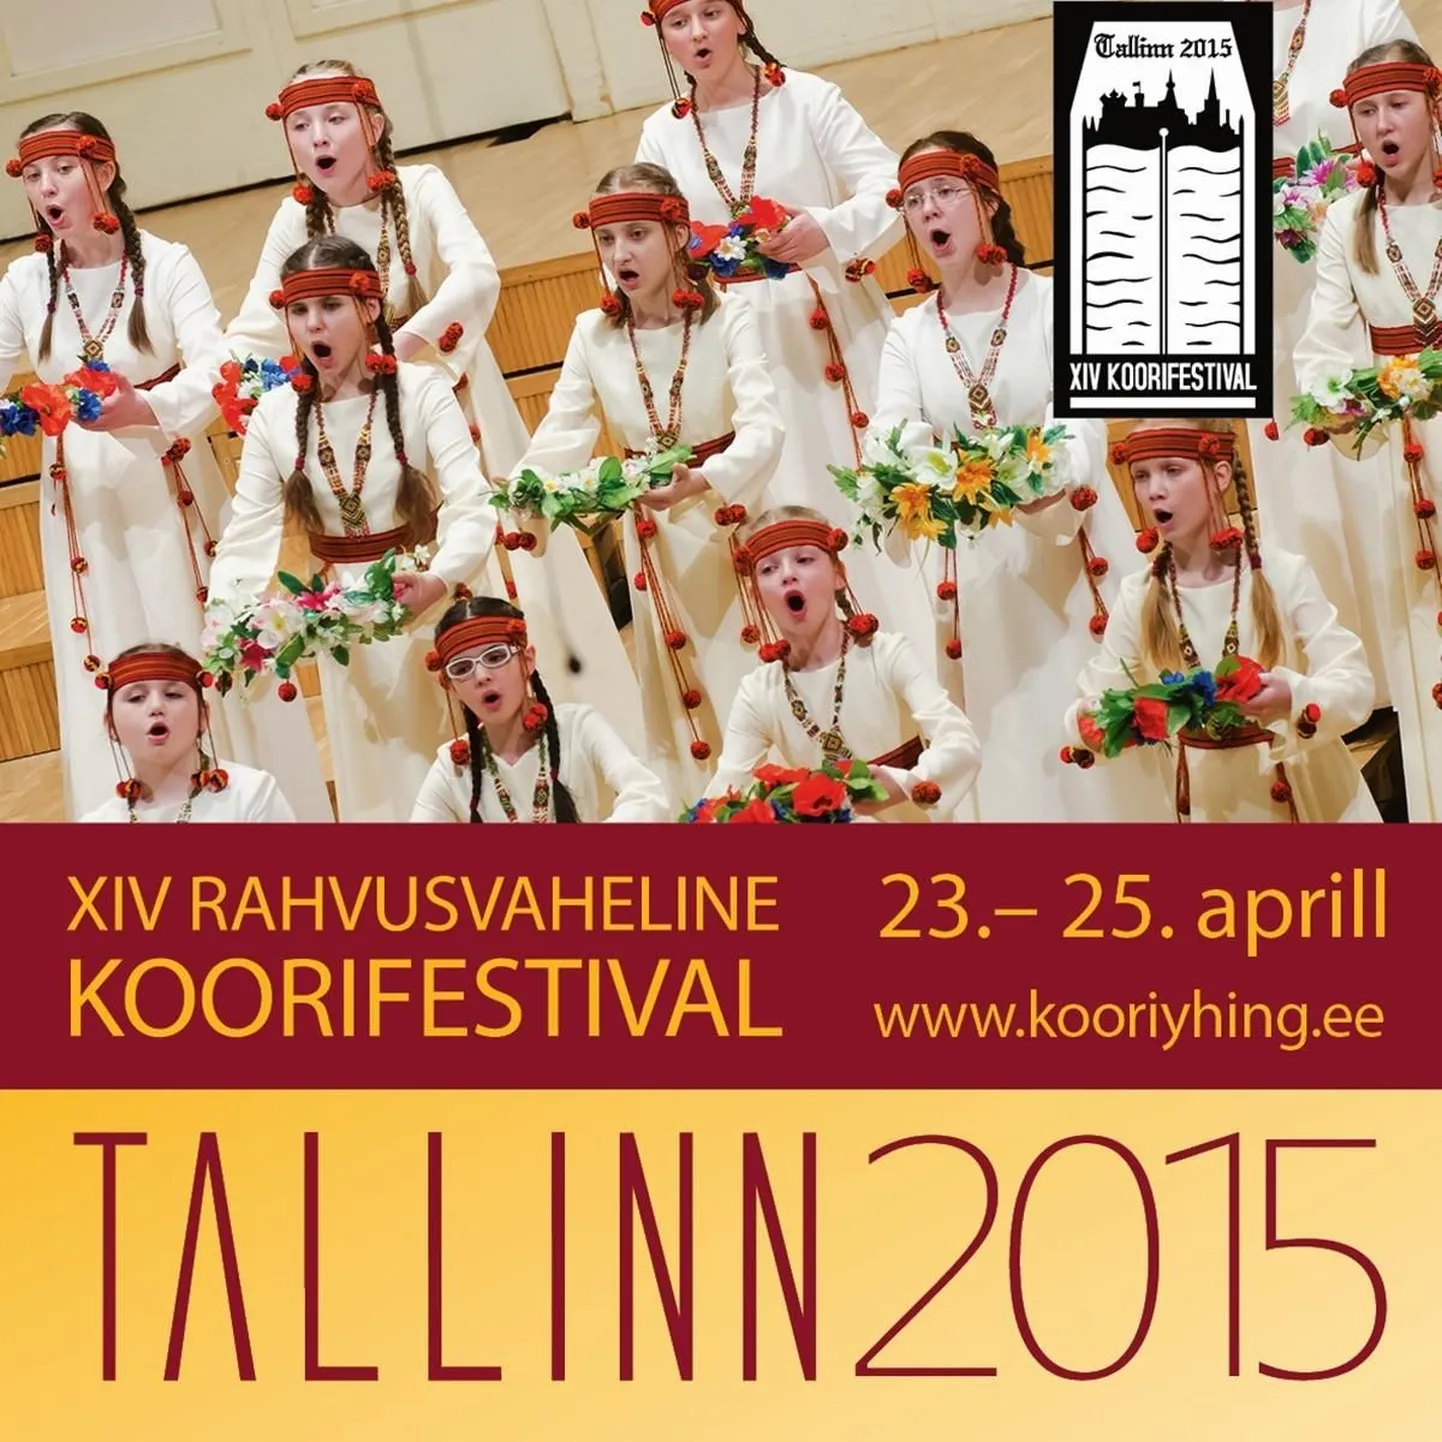 XIV RAHVUSVAHELINE KOORIFESTIVAL TALLINN 2015